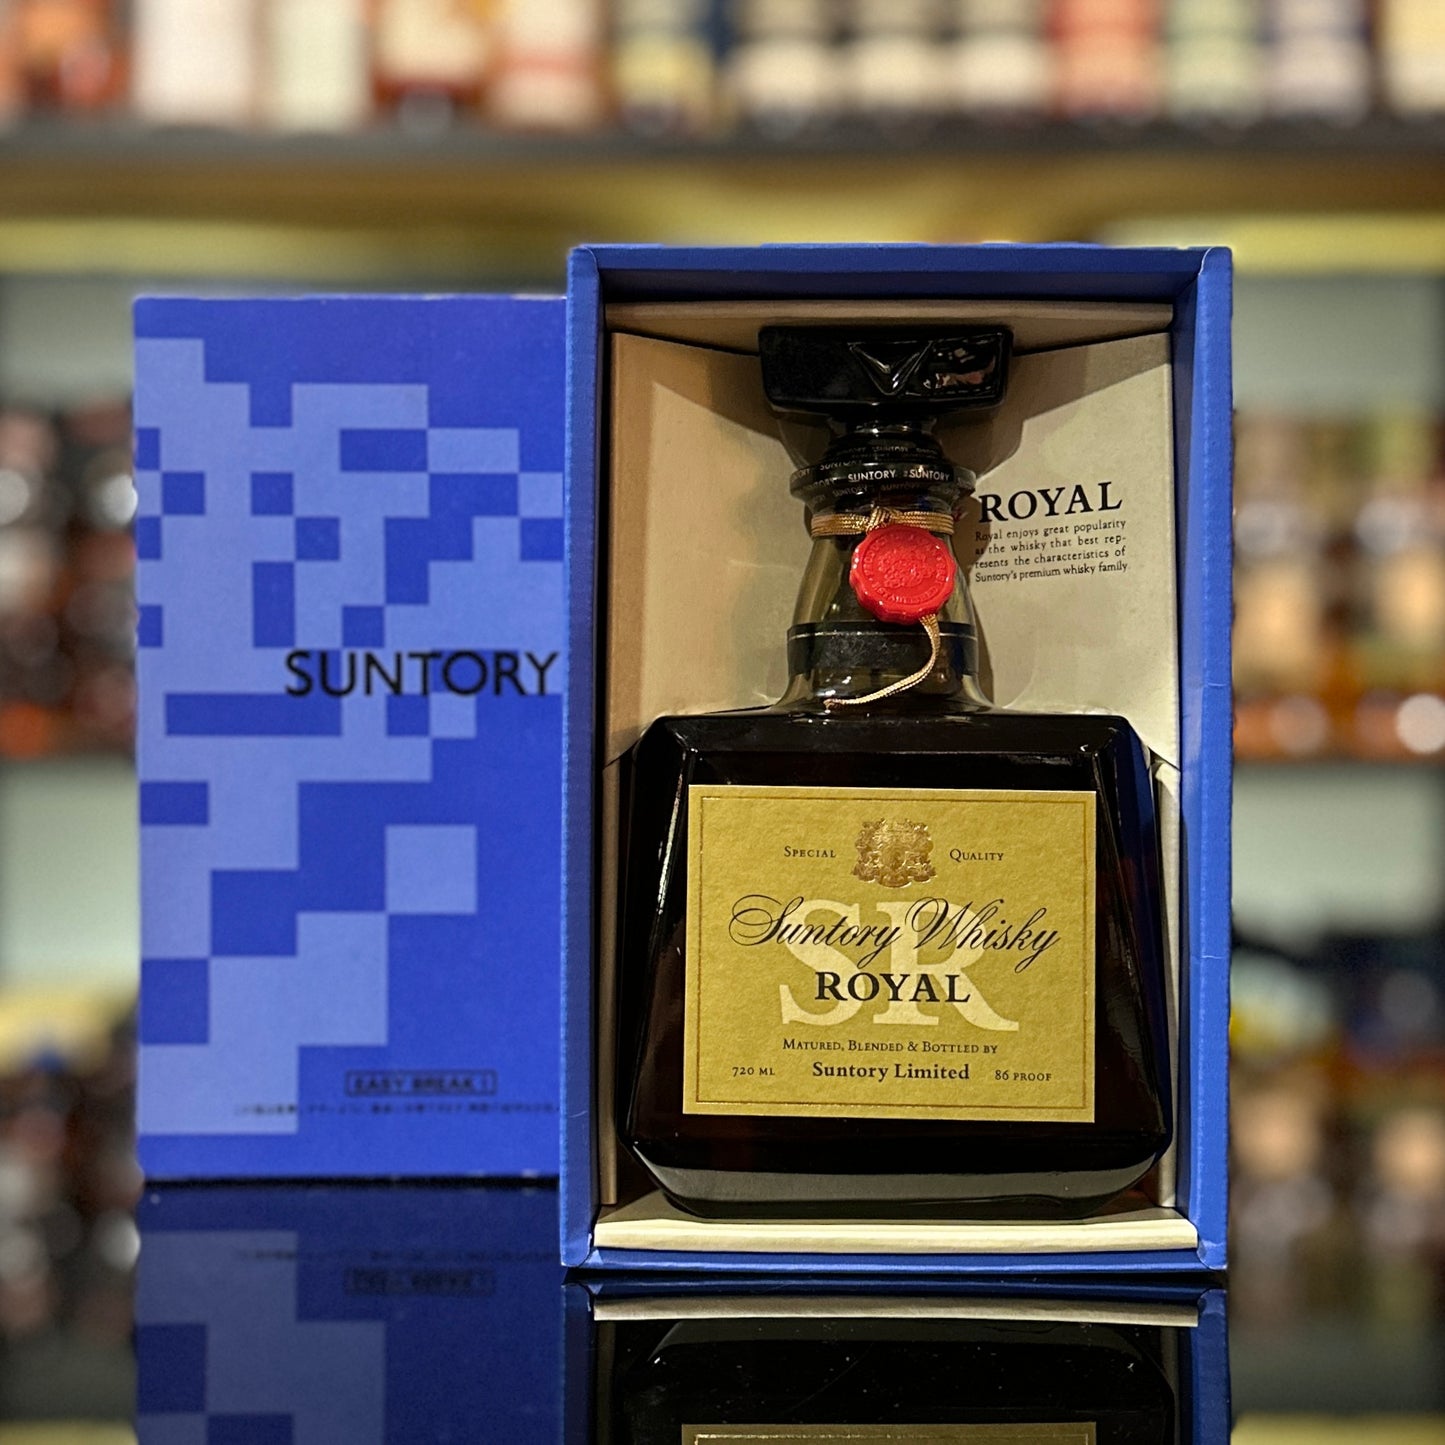 Suntory Royal Blended Japanese Whisky (Blue Box, 720ml)